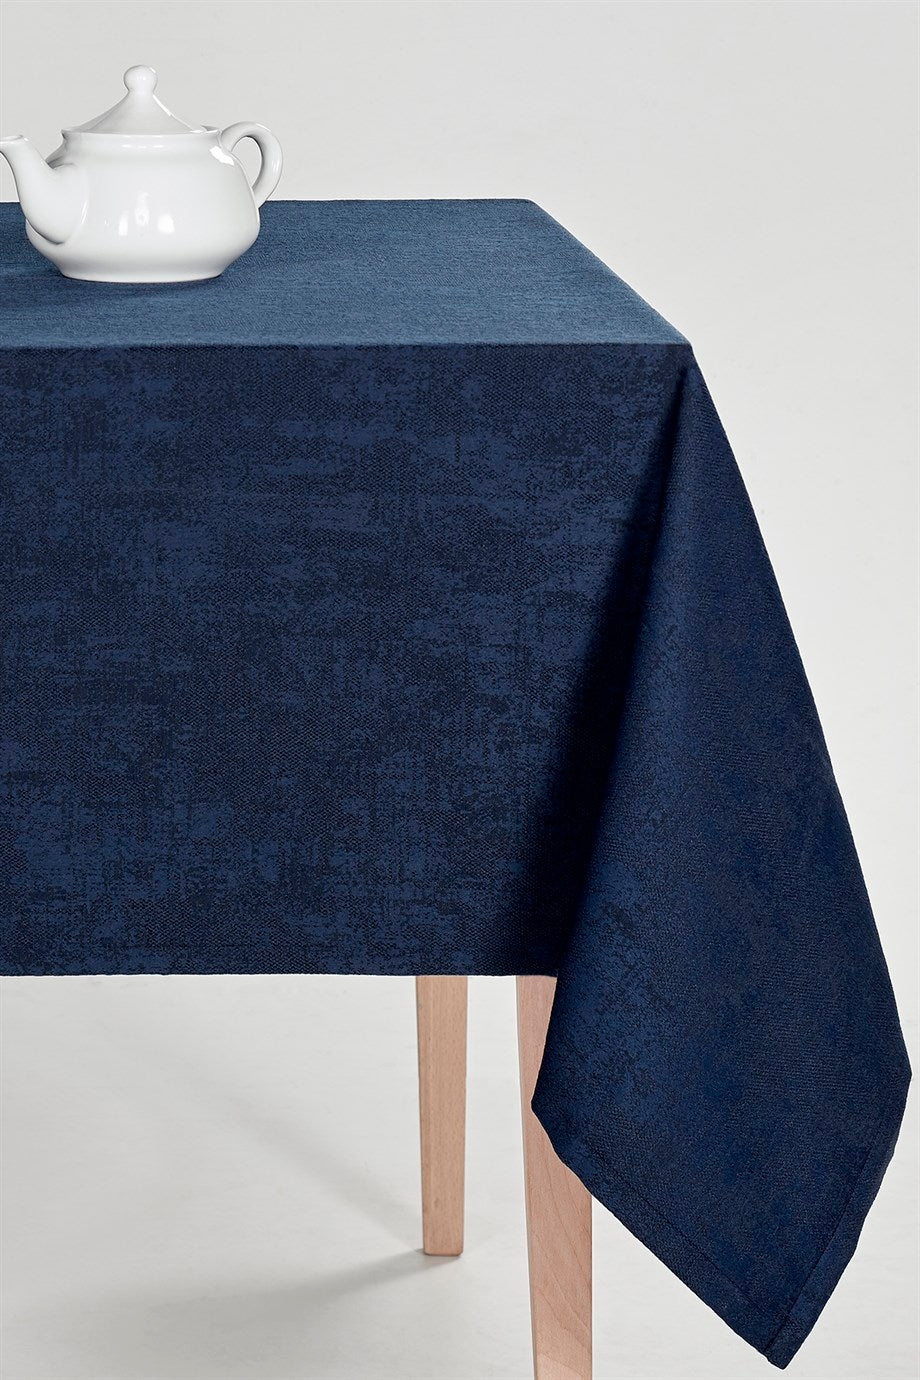 DENIZLI CONCEPT Milano Table Cloth Navy Blue